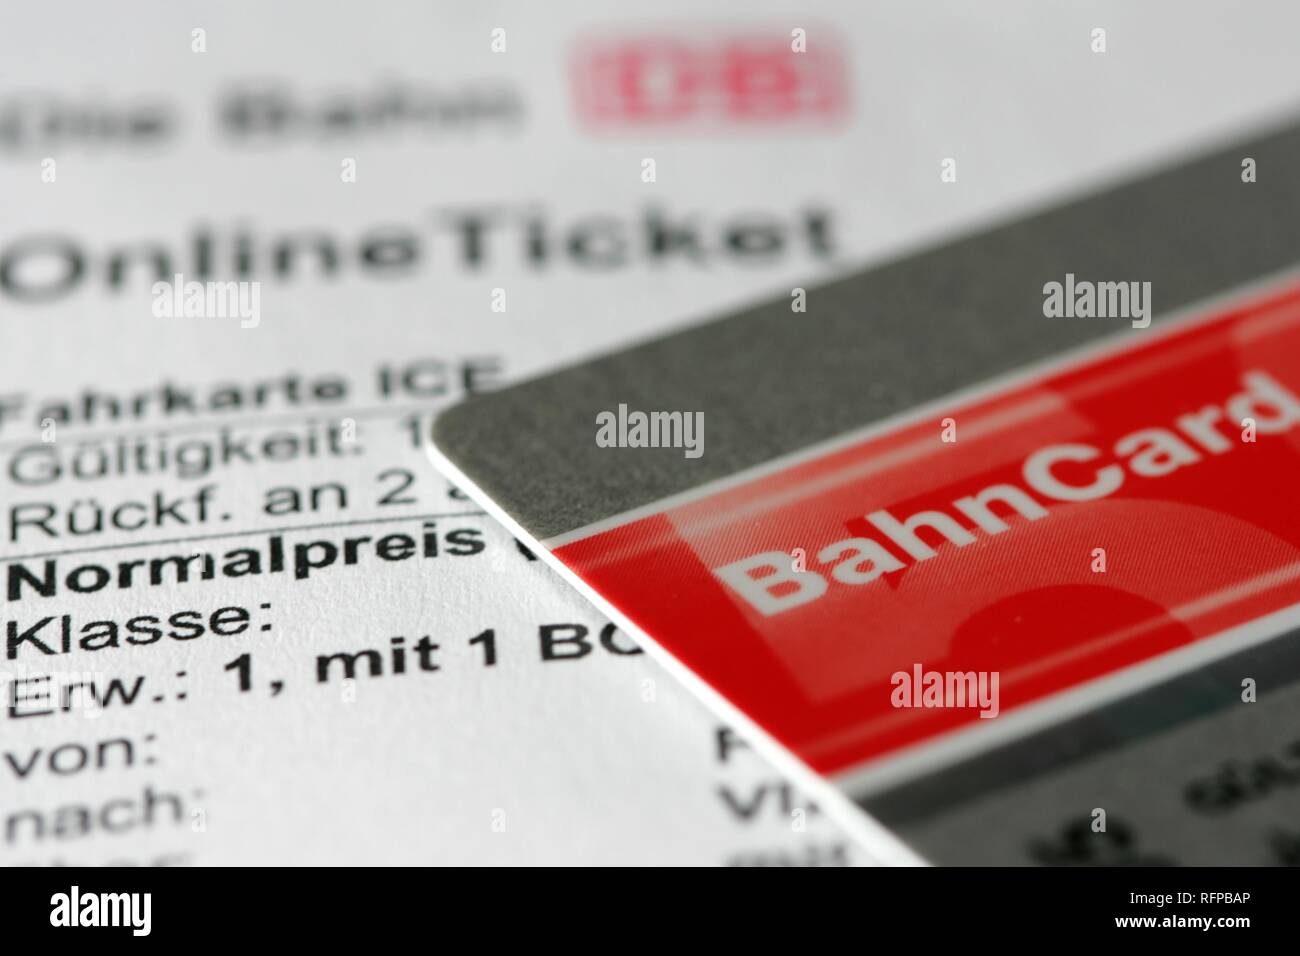 DEU, Allemagne : billet de train en ligne. Réservation sur internet, avec une remise spéciale, carte Bahncard. Banque D'Images